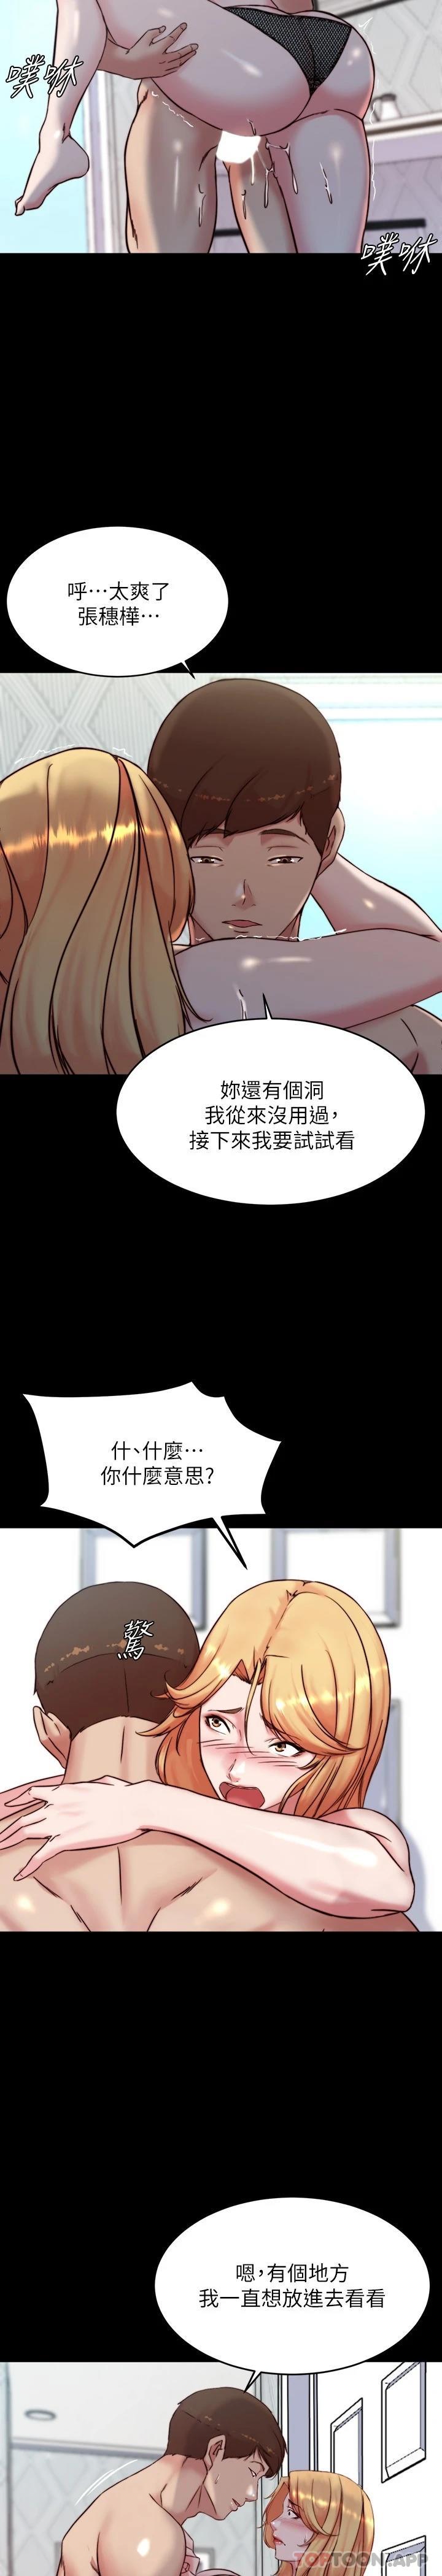 韩国污漫画 小褲褲筆記 第107话 完全变成奴隶的穗桦 28